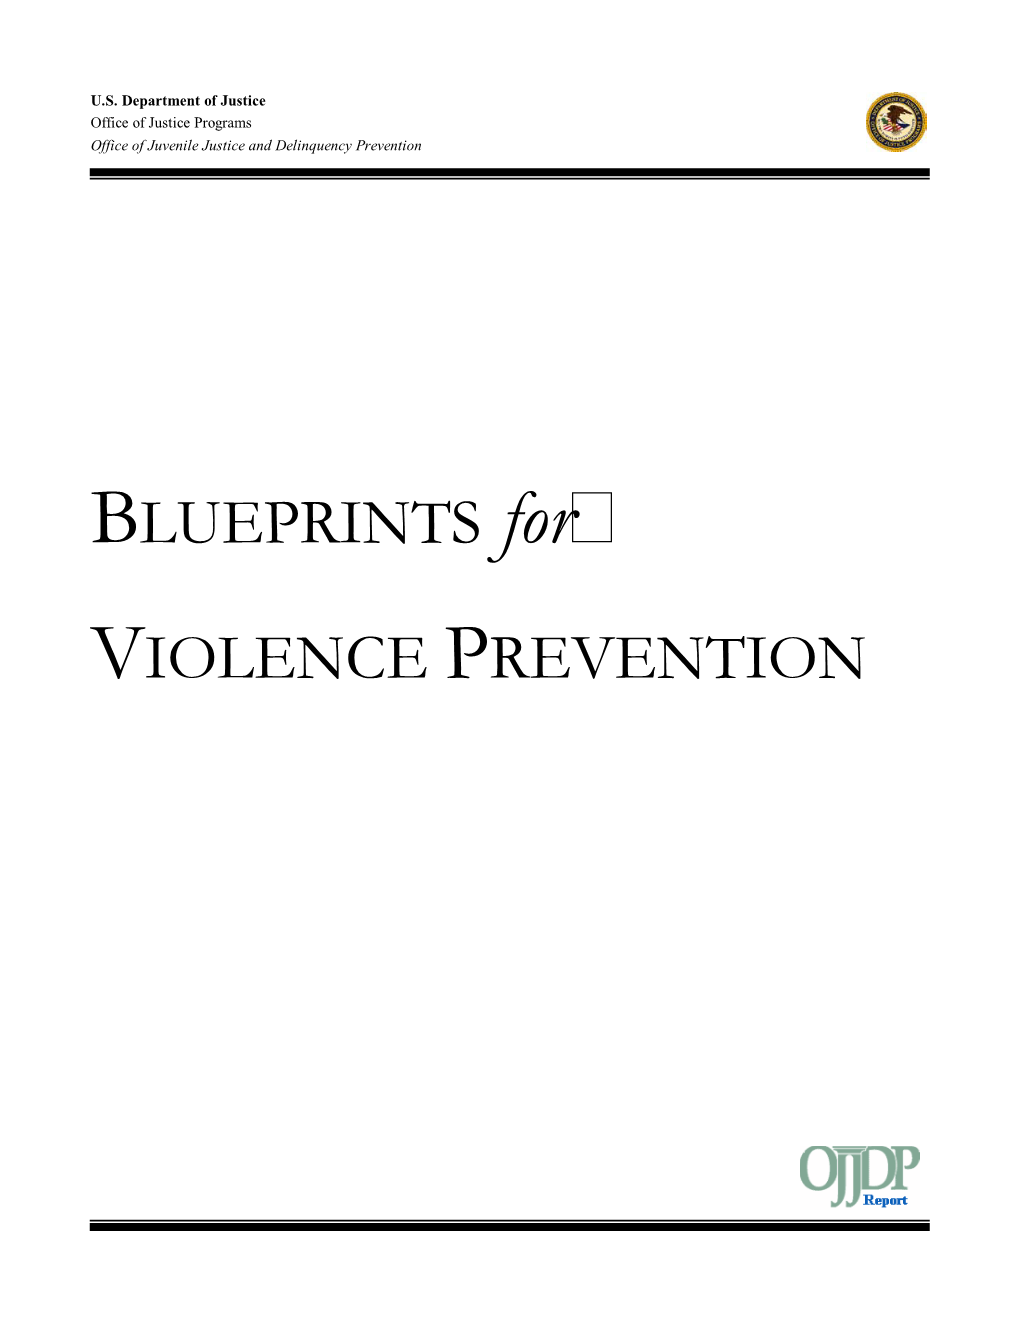 BLUEPRINTS for VIOLENCE PREVENTION